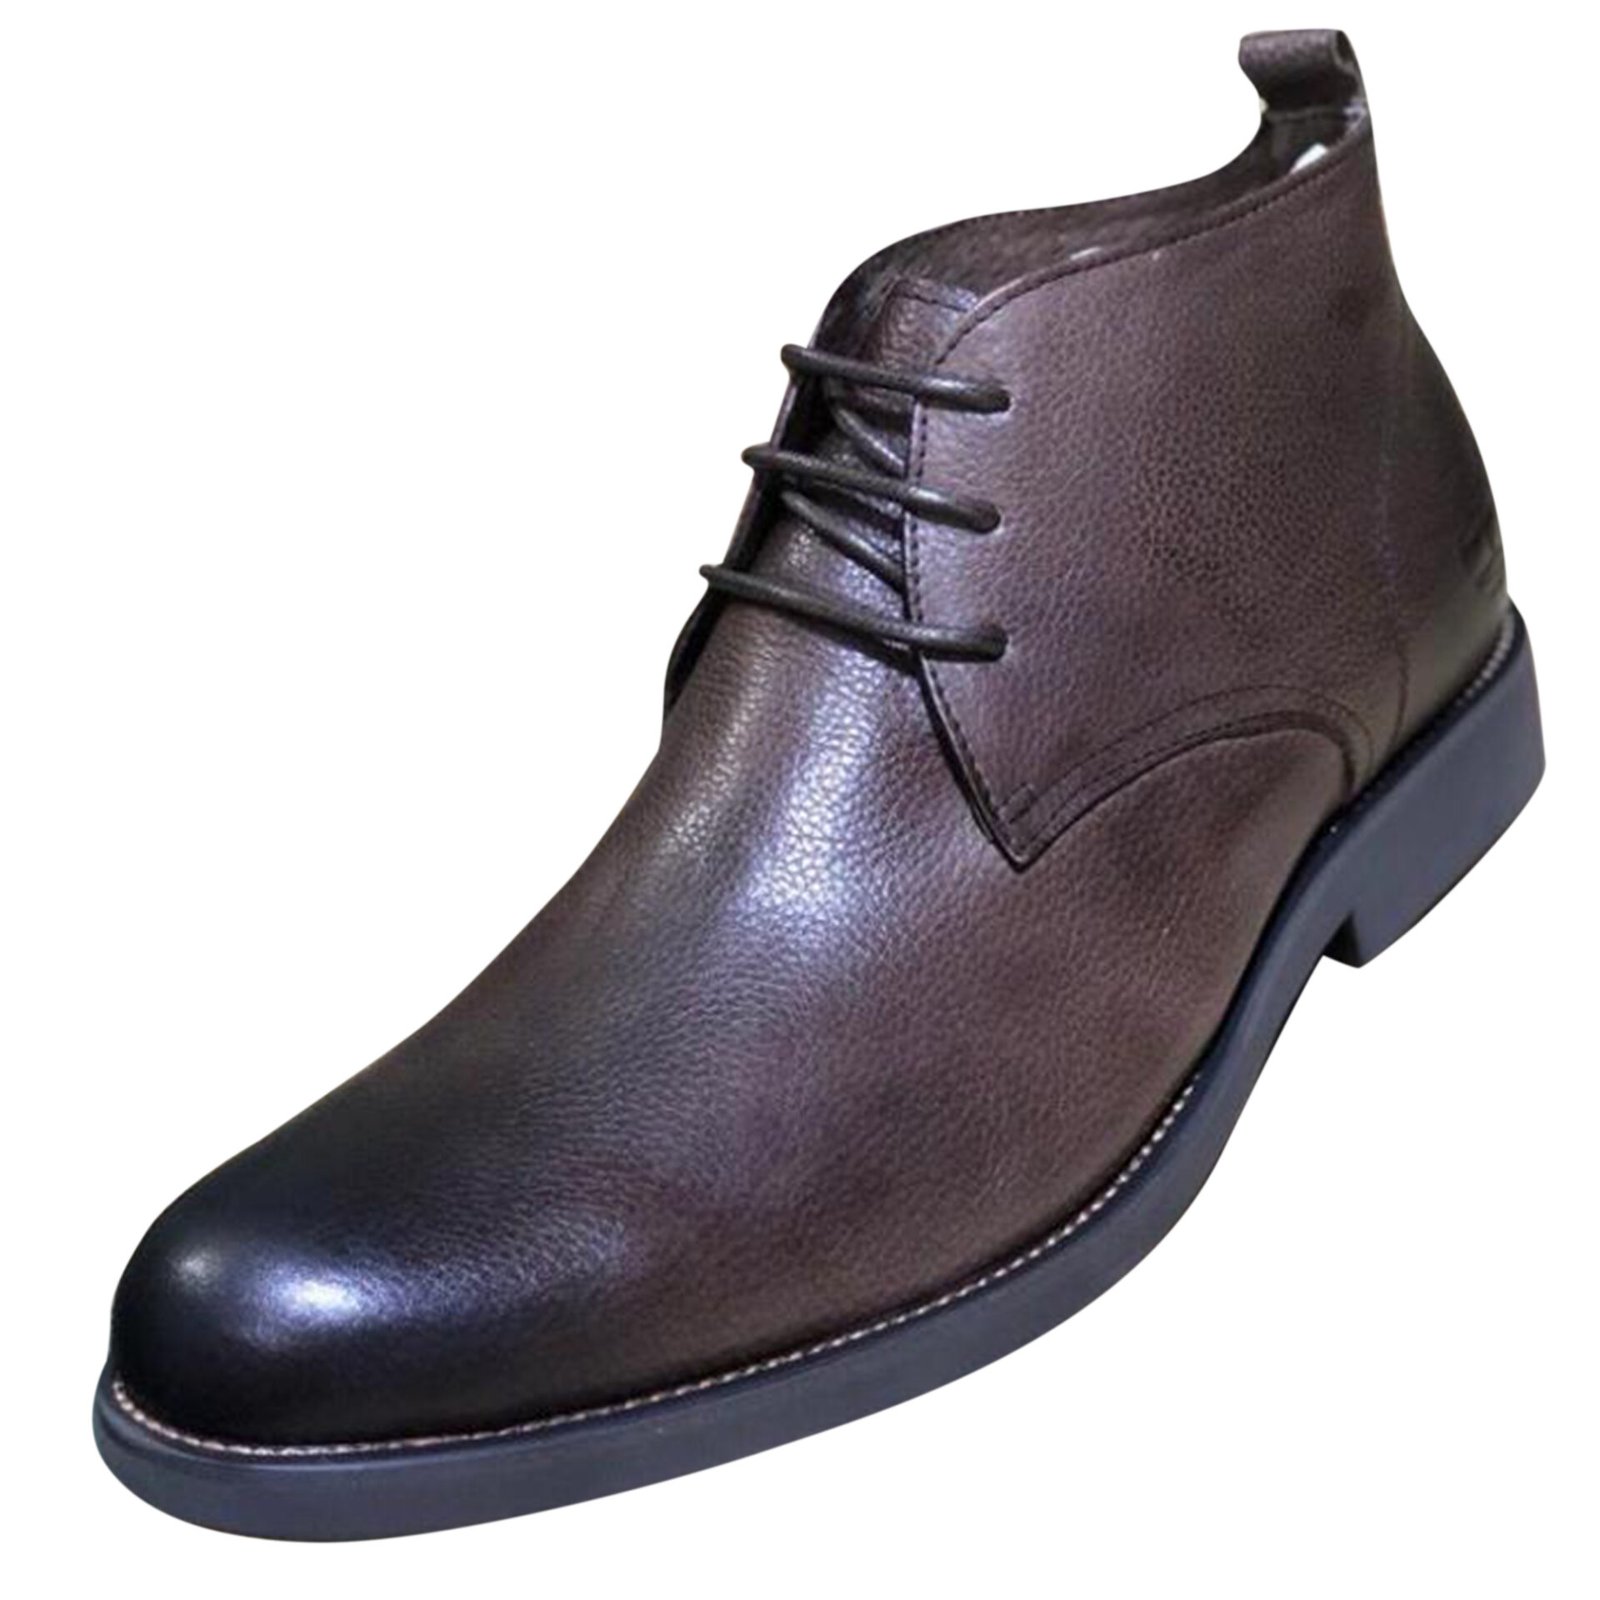 Buy Clarks Men's Boots Online in Uganda | discountduuka.com